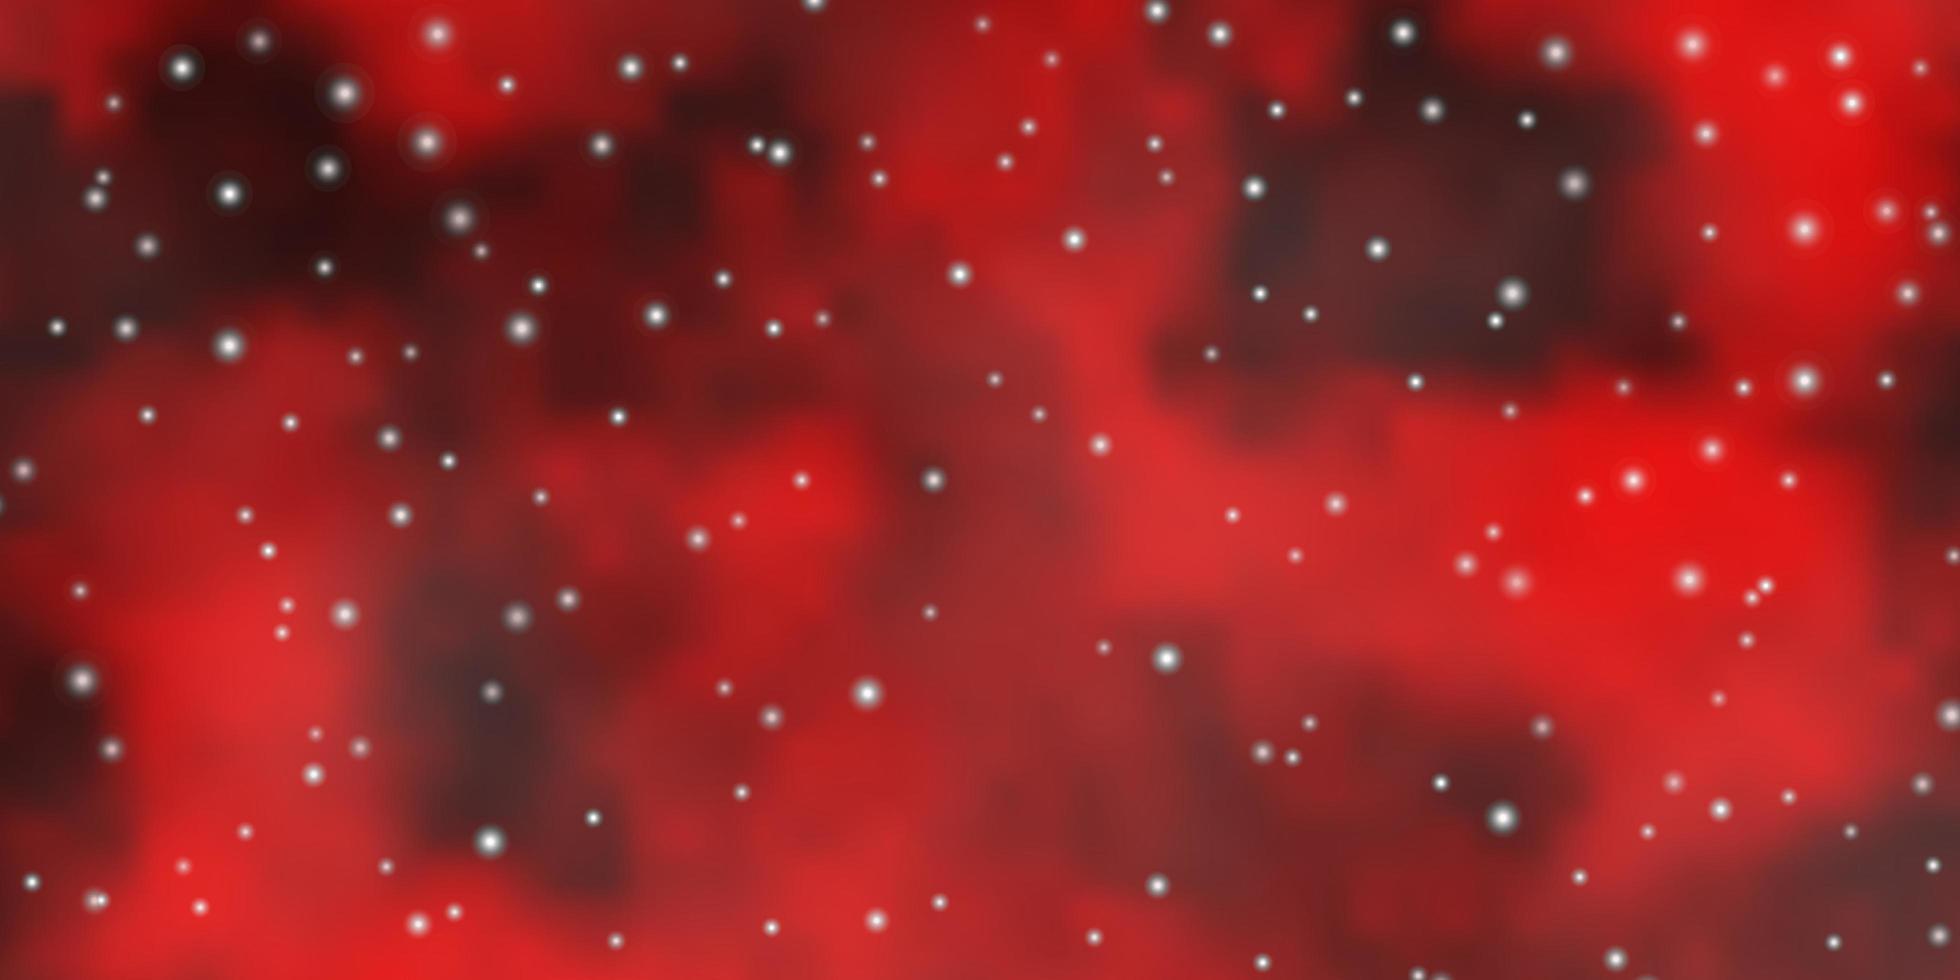 modèle vectoriel rouge foncé avec des étoiles au néon brillantes illustration colorée avec une conception de petites et grandes étoiles pour la promotion de votre entreprise